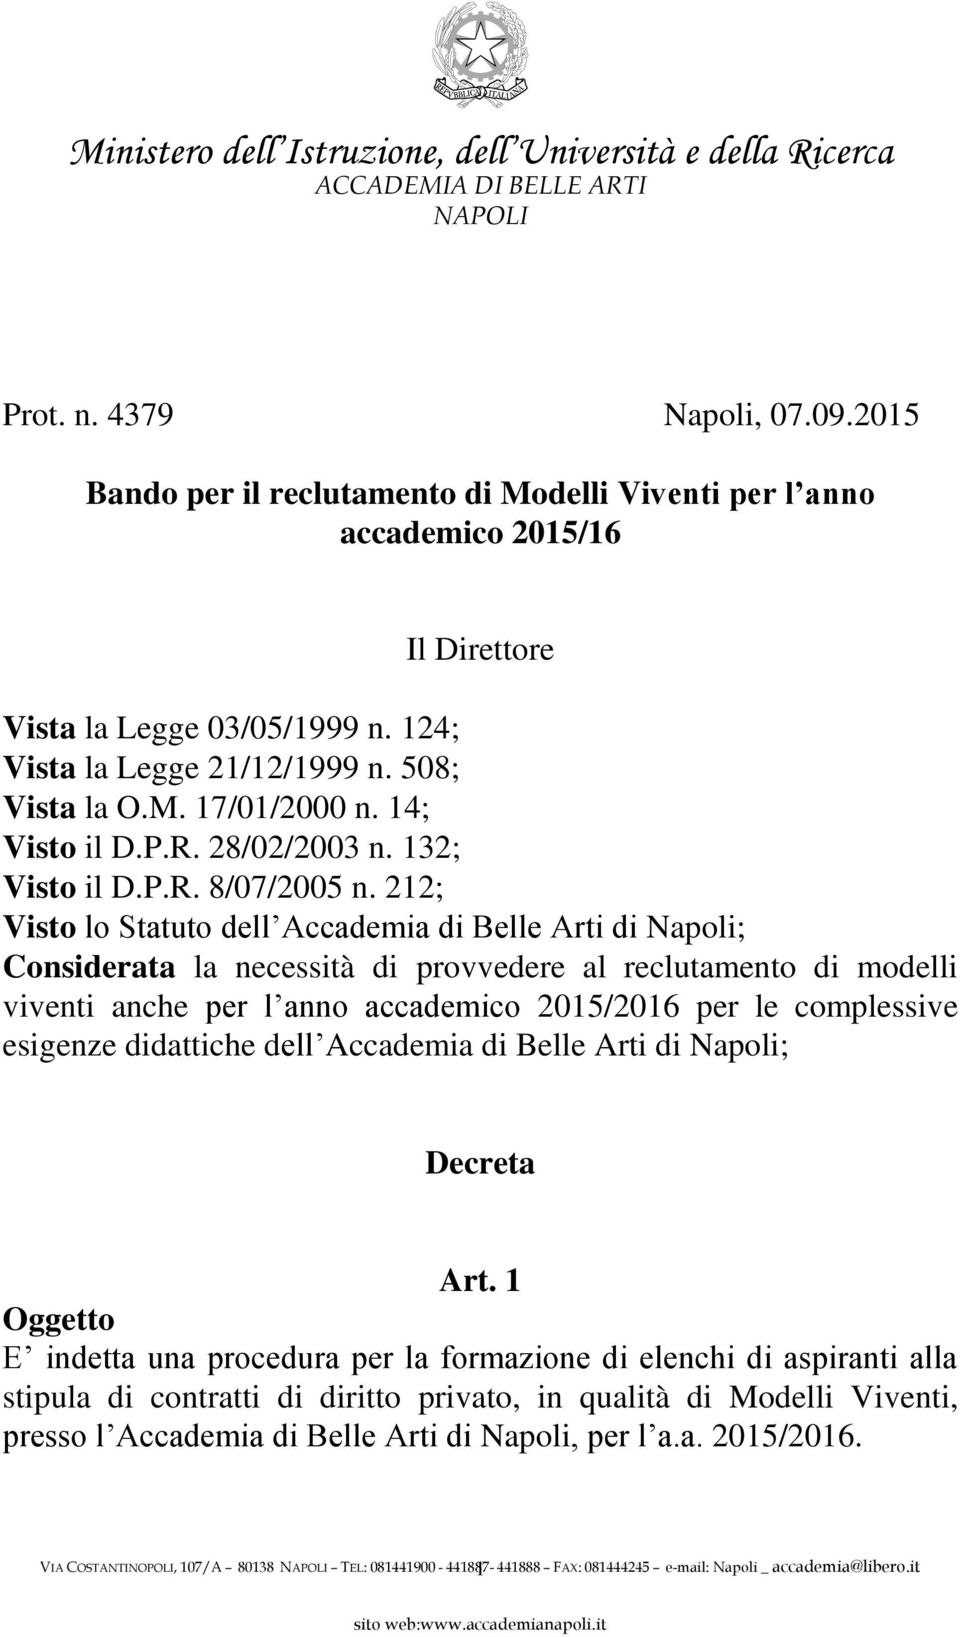 212; Visto lo Statuto dell Accademia di Belle Arti di Napoli; Considerata la necessità di provvedere al reclutamento di modelli viventi anche per l anno accademico 2015/2016 per le complessive